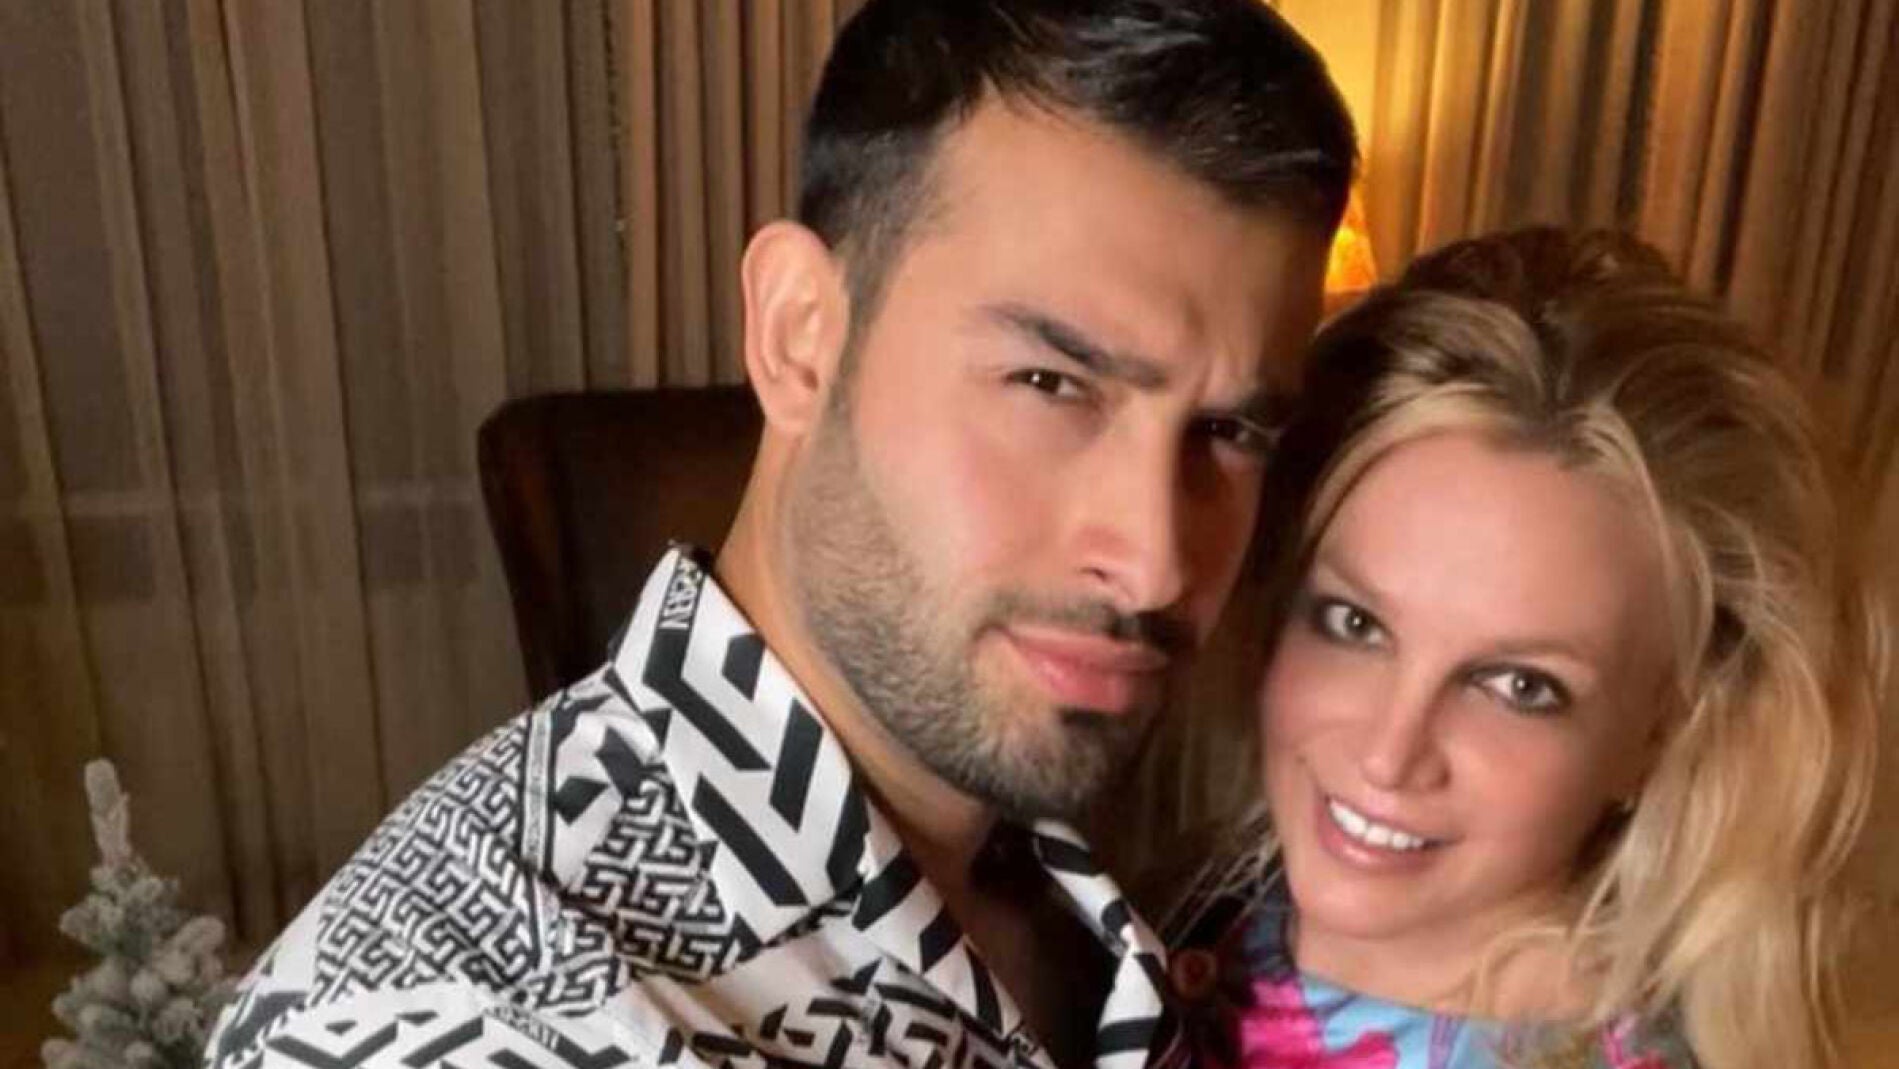 El marido de Britney Spears le acusa de infidelidad y agresión como motivo del divorcio